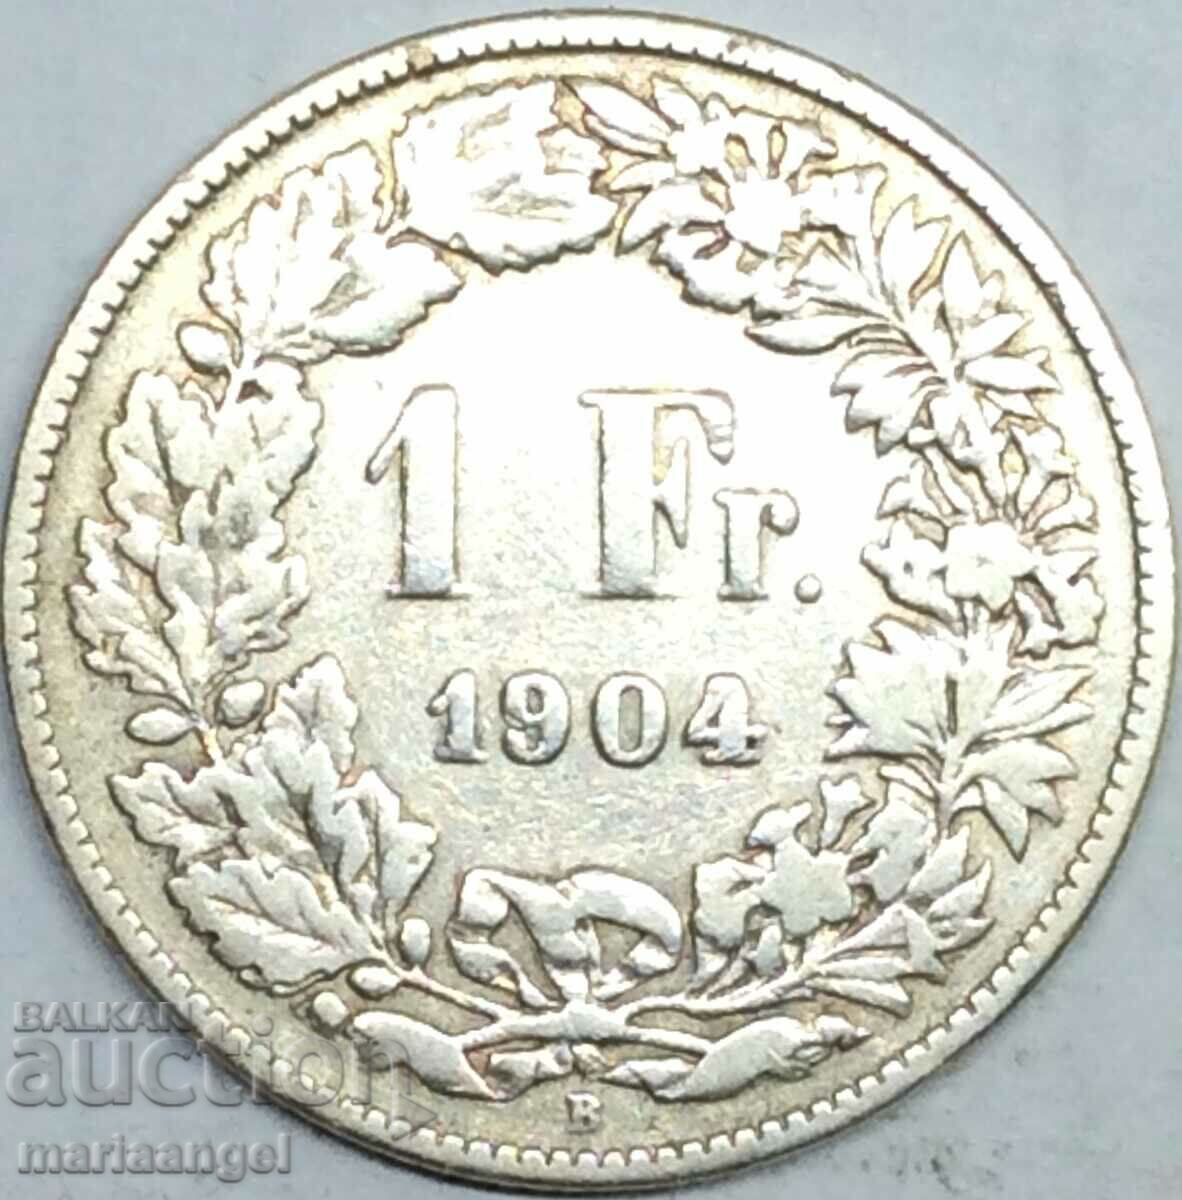 Ελβετία 1 φράγκο 1904 Β - καντόνι Βέρνη αργυρό - σπάνιο έτος